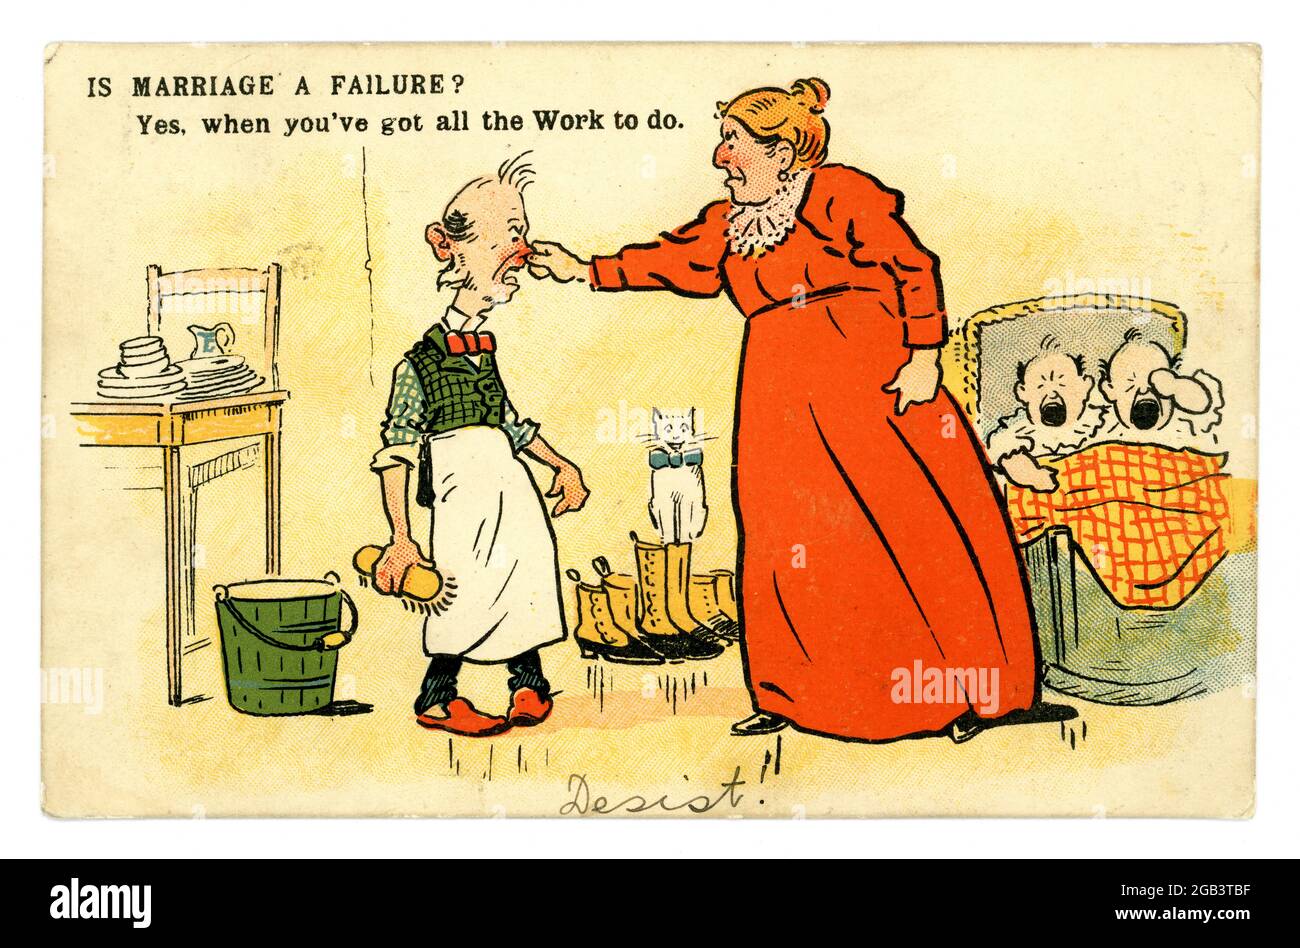 Carte graphique originale édouardienne anti-suffragette représentant une femme bossy, surportante, pinçant le nez de son mari de maison de travail de poireau, 'est-ce que le mariage est un échec?', publié en mai 1907, Royaume-Uni Banque D'Images